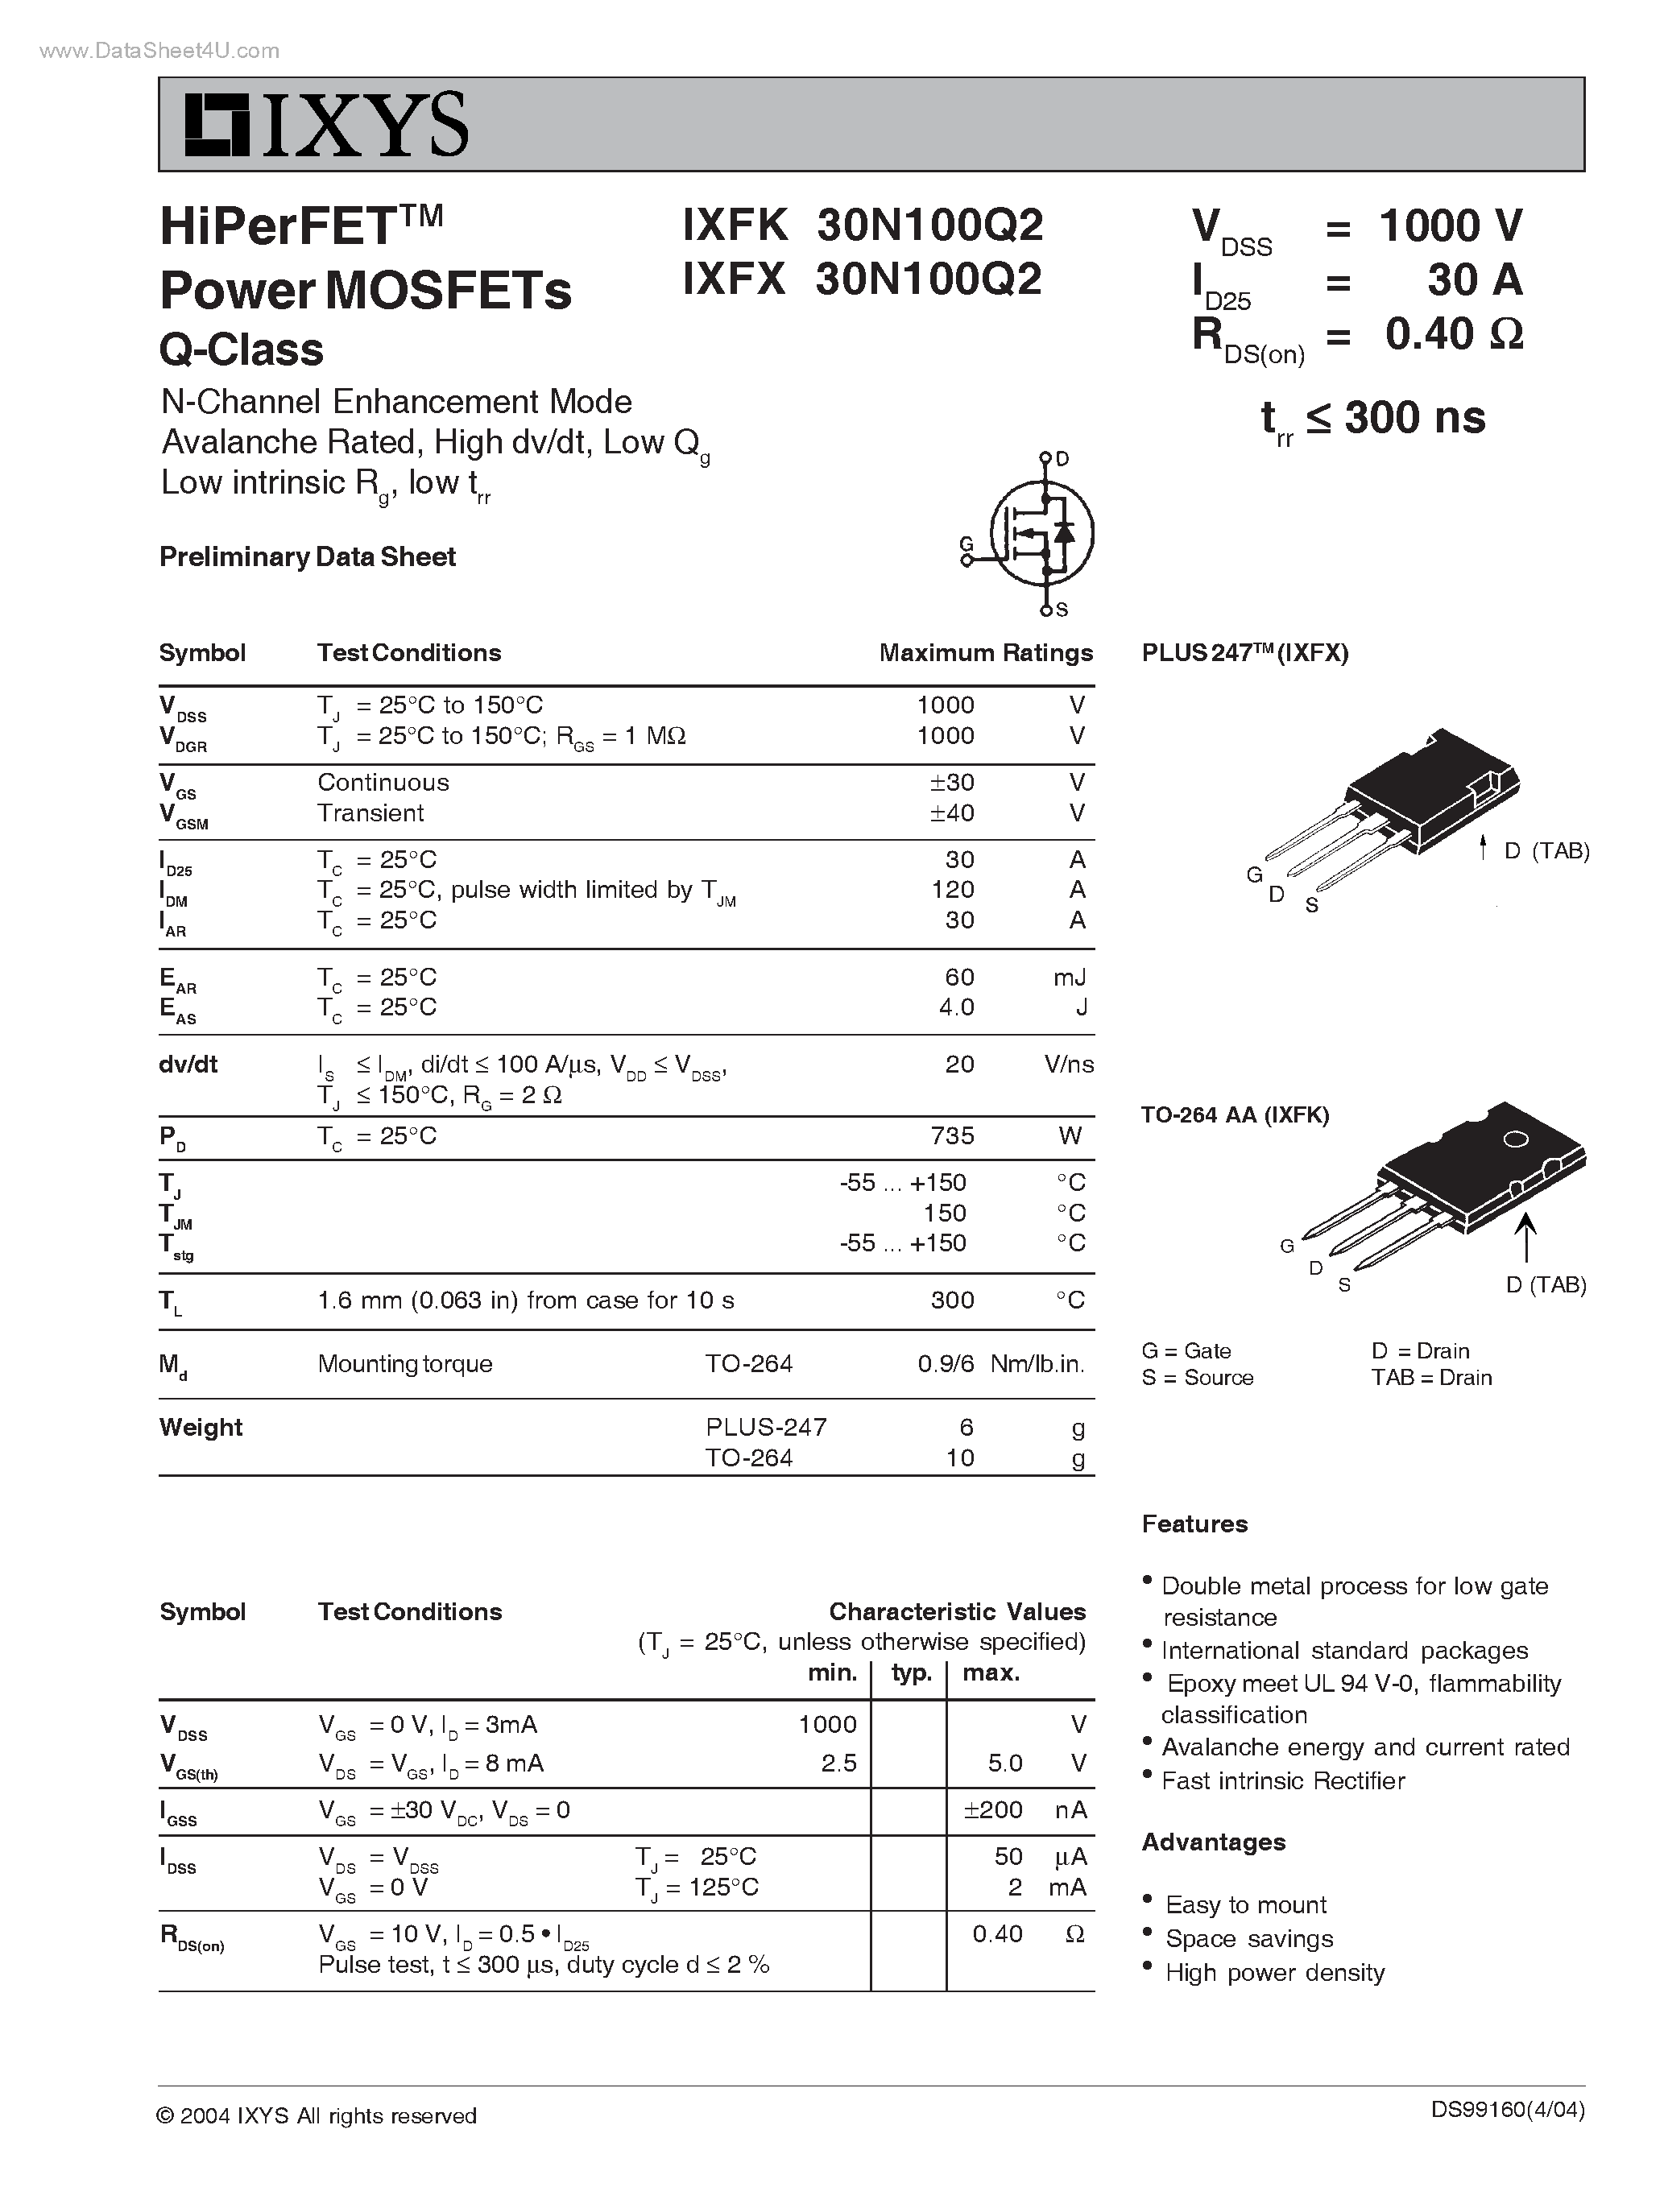 Даташит IXFK30N100Q2 - (IXFK30N100Q2 / IXFX30N100Q2) HiPerFET Power MOSFETs Q-Class страница 1